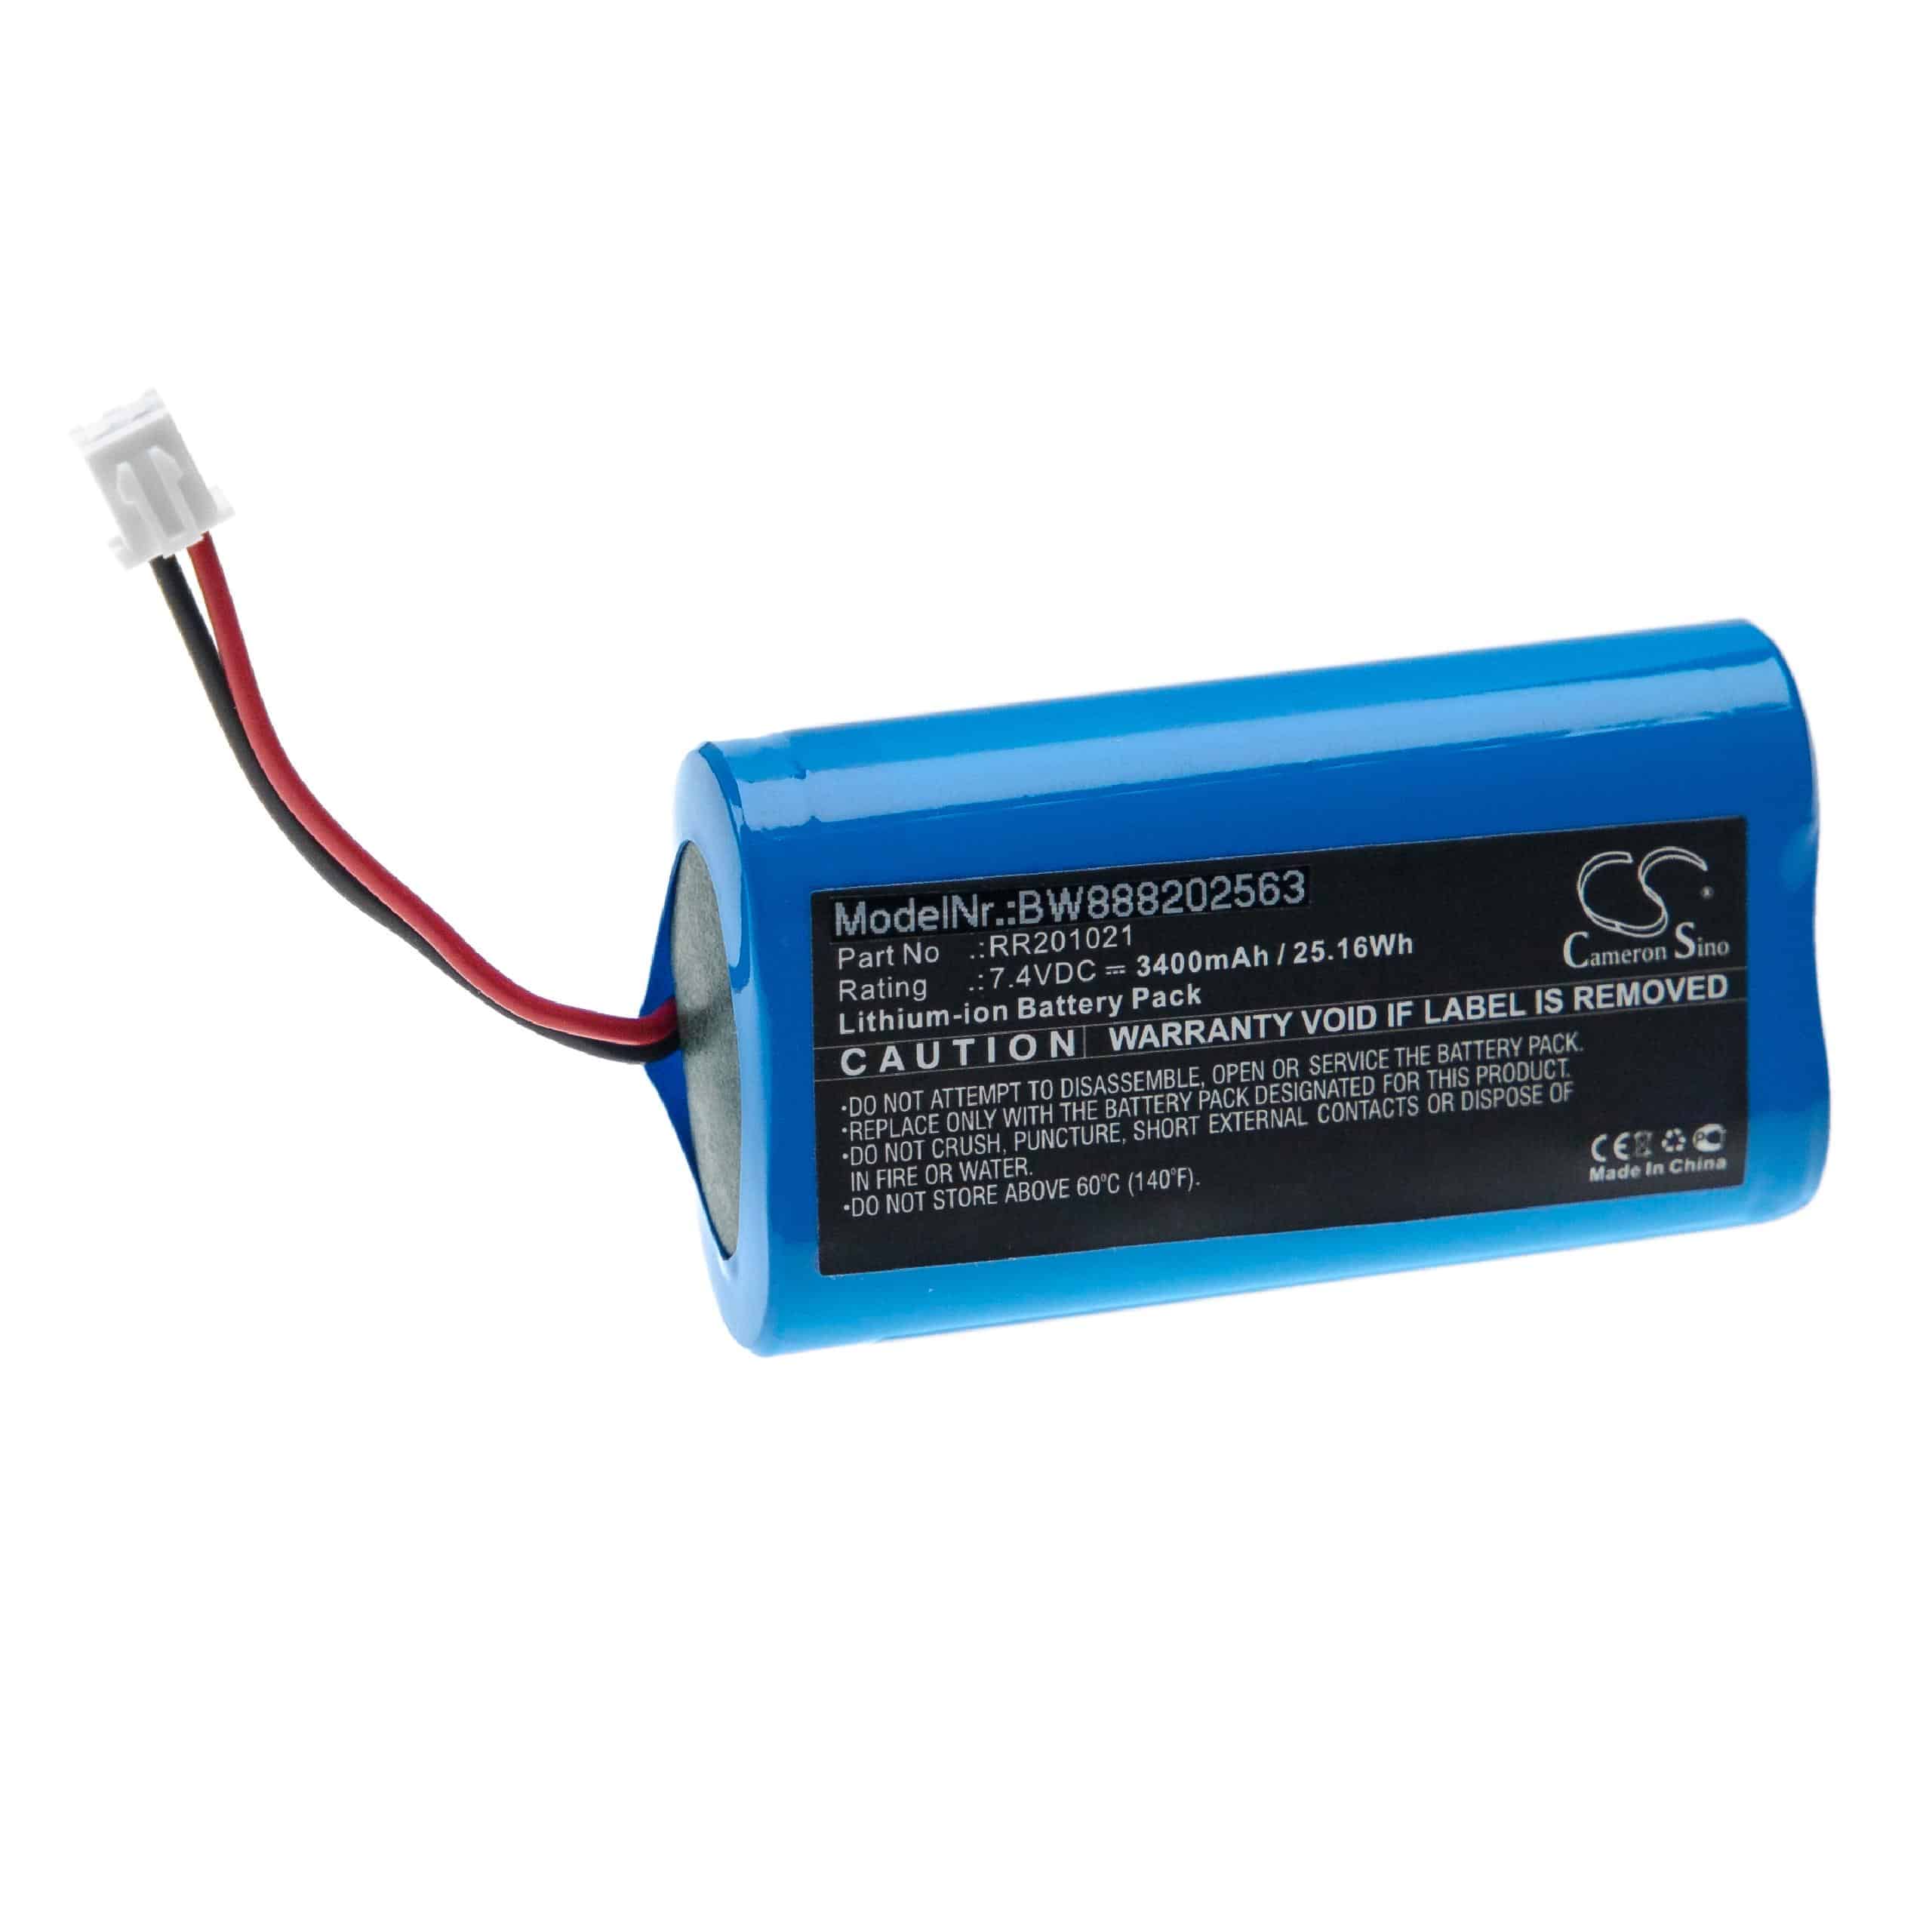 Batterie remplace RR201021 pour soudeuse - 3400mAh 7,4V Li-ion